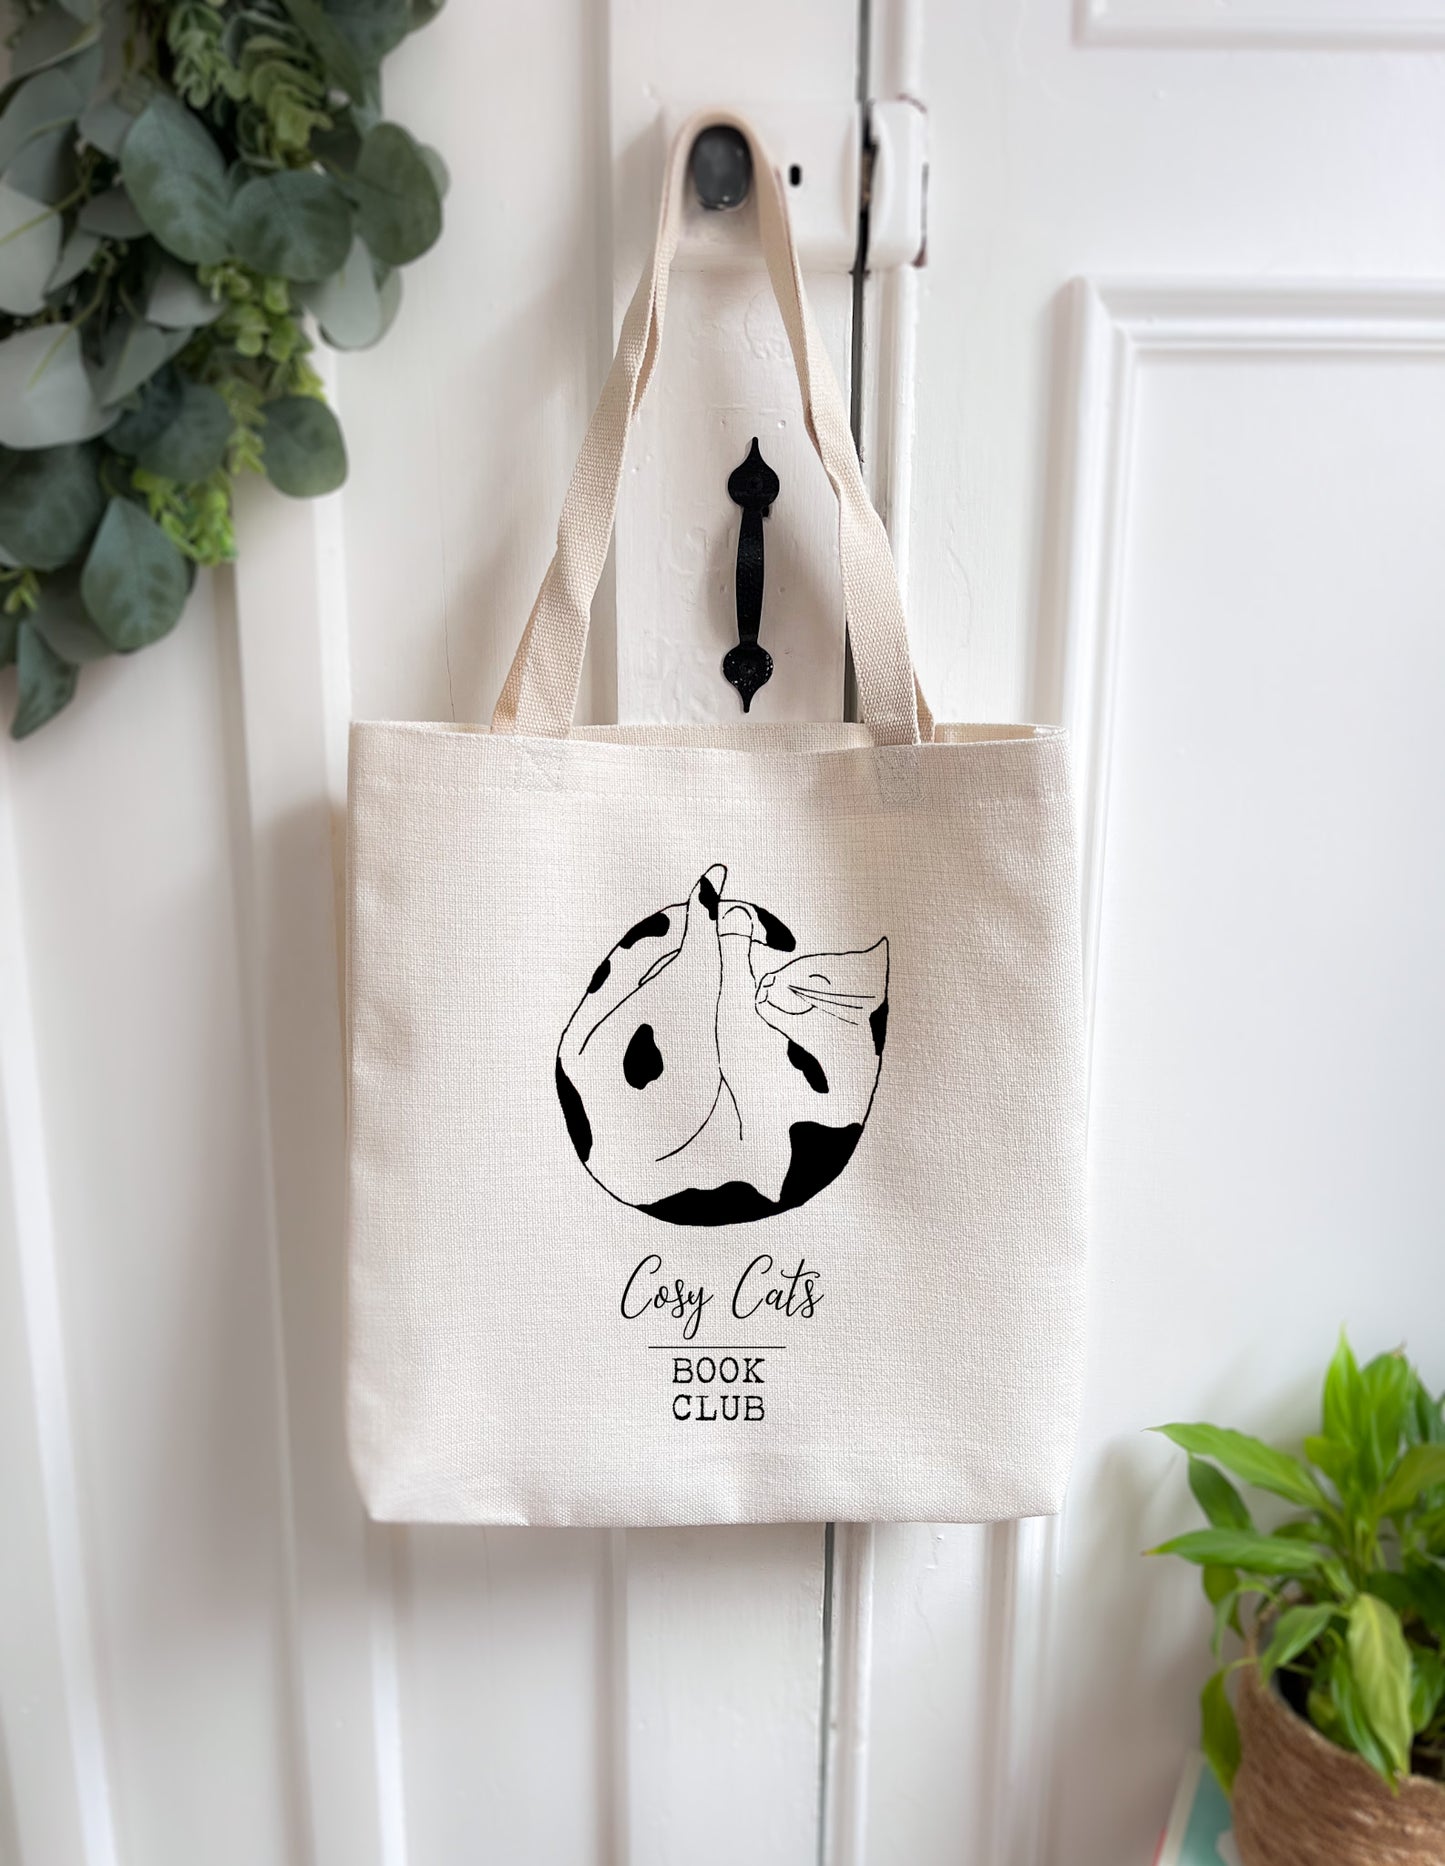 Cosy Cats Book Club Book/Tote Bag